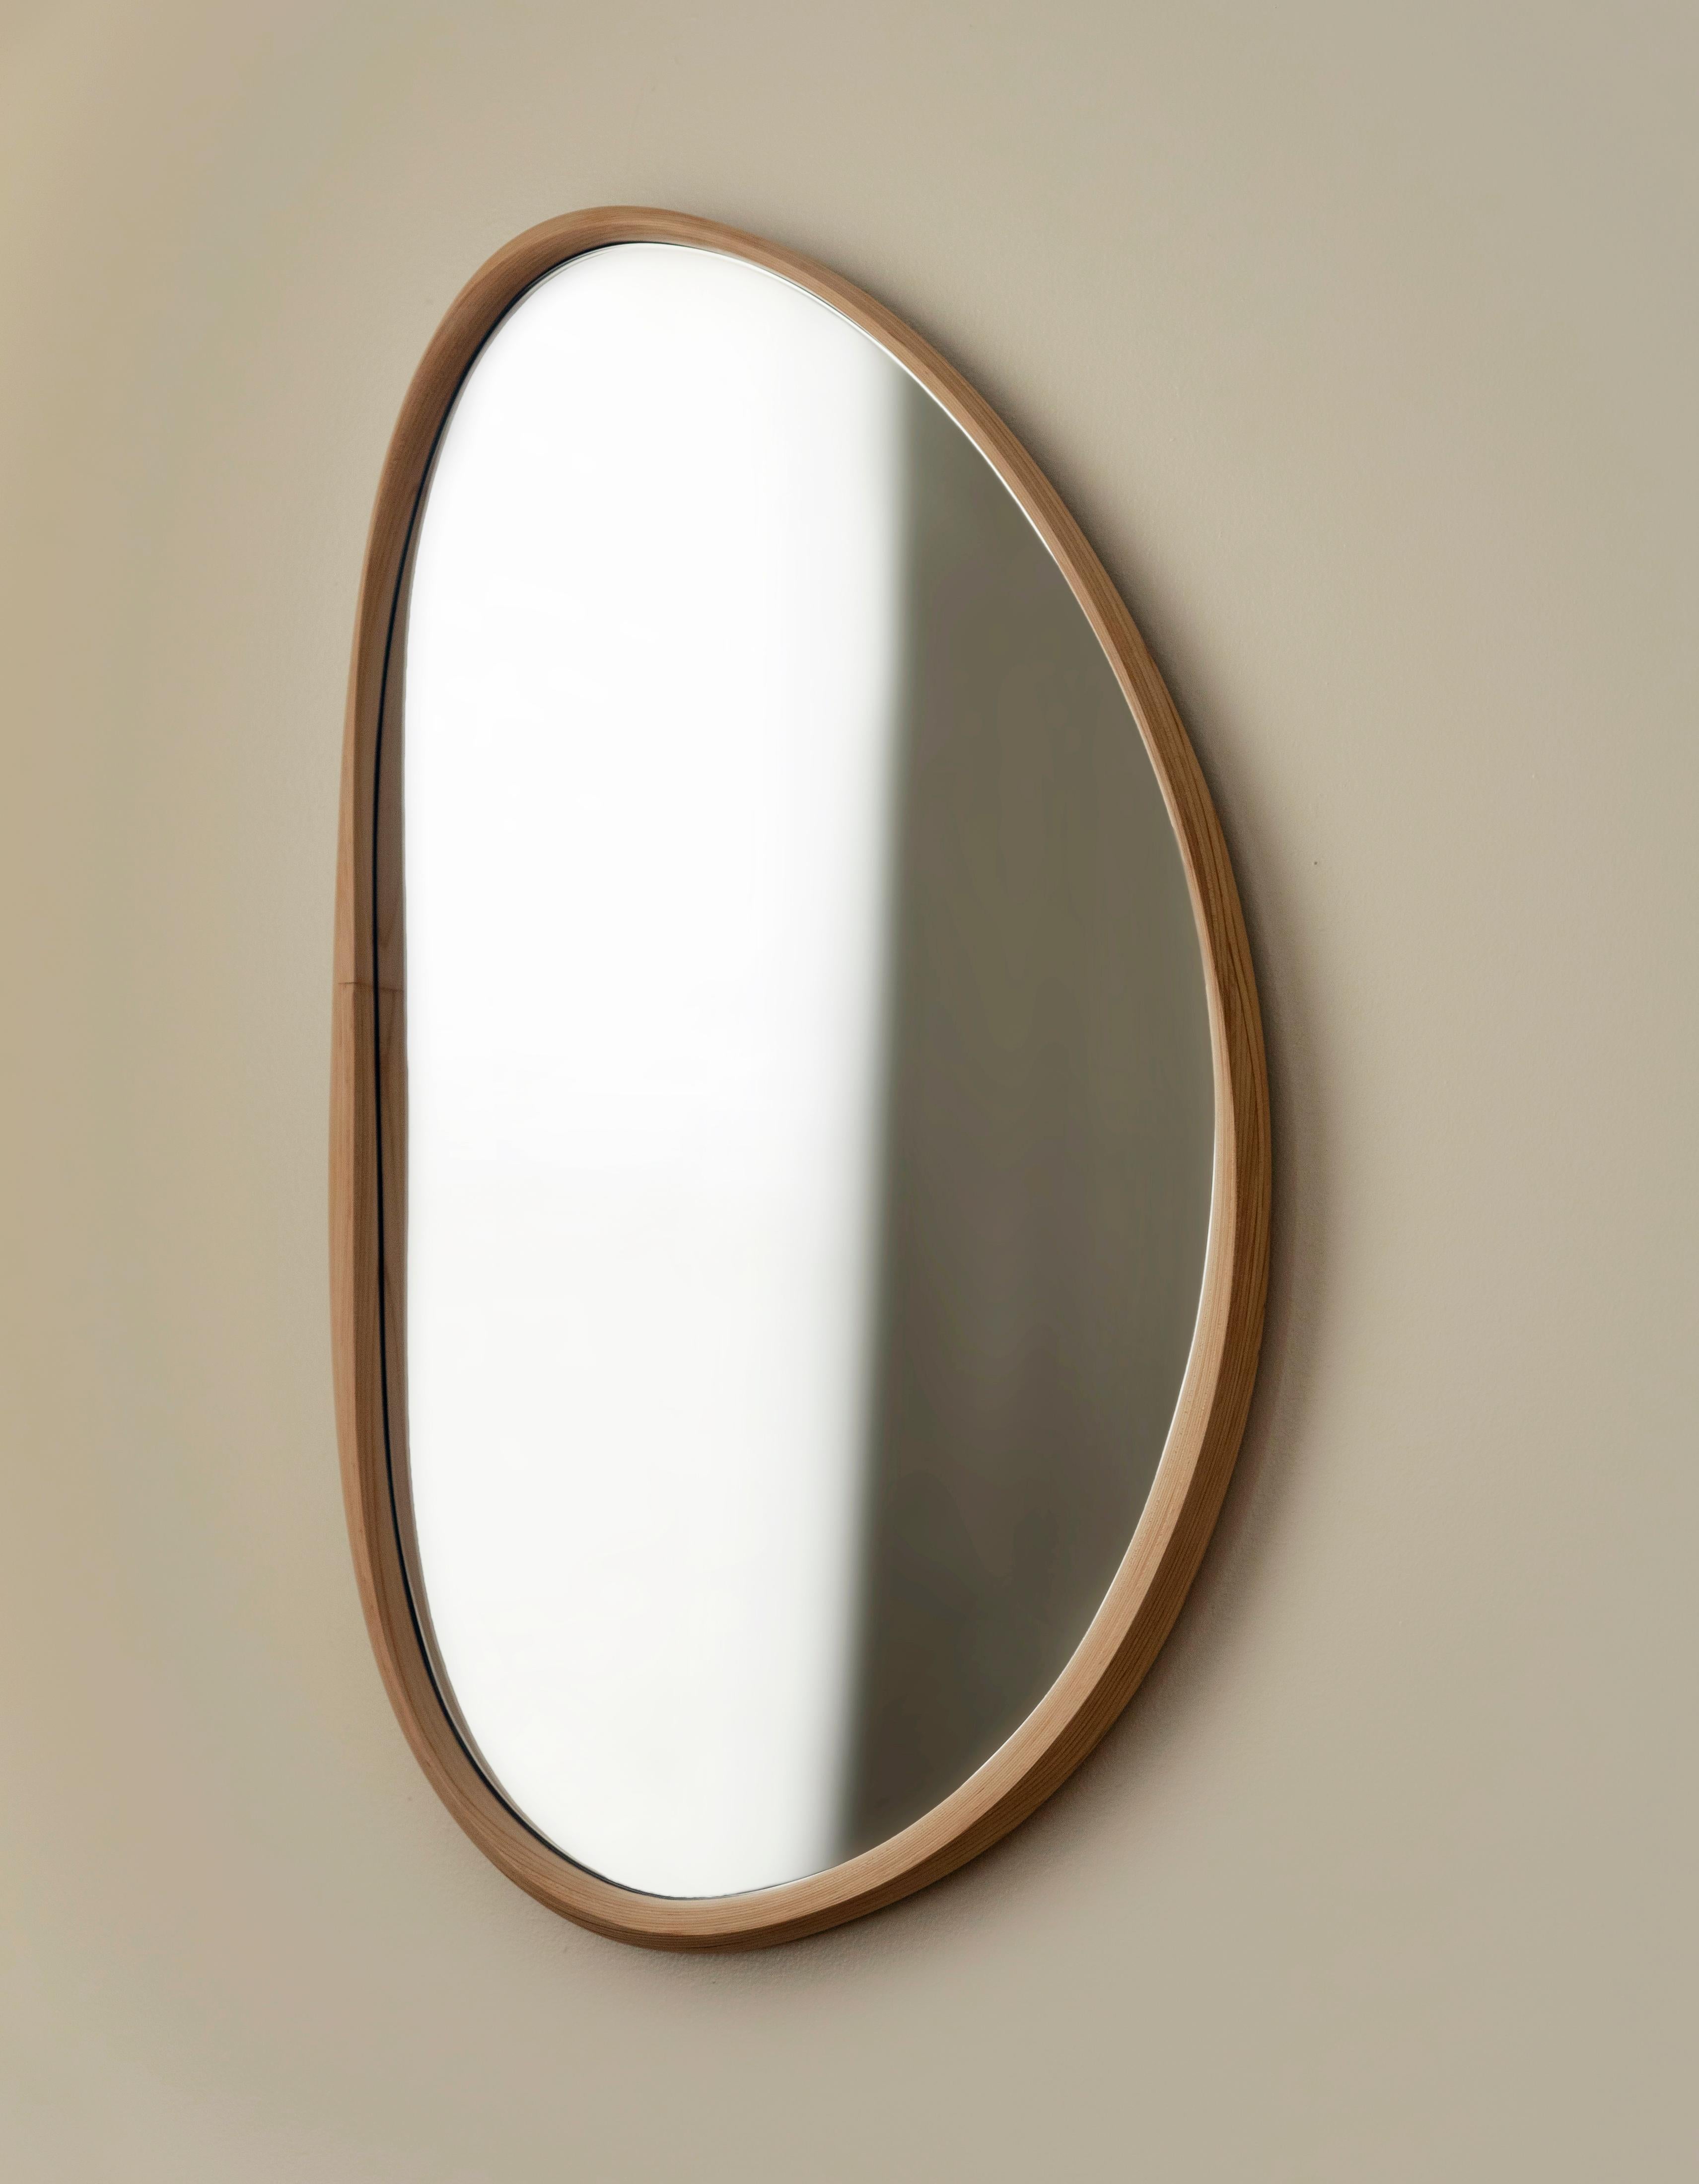 Le miroir Pebble utilise la technique traditionnelle du travail du bois, le bent-lamination, pour préserver la beauté du bois tordu et conserver la tension dans un objet solide. Le cadre ondulant, fin et épais, est délicatement sculpté à la main par